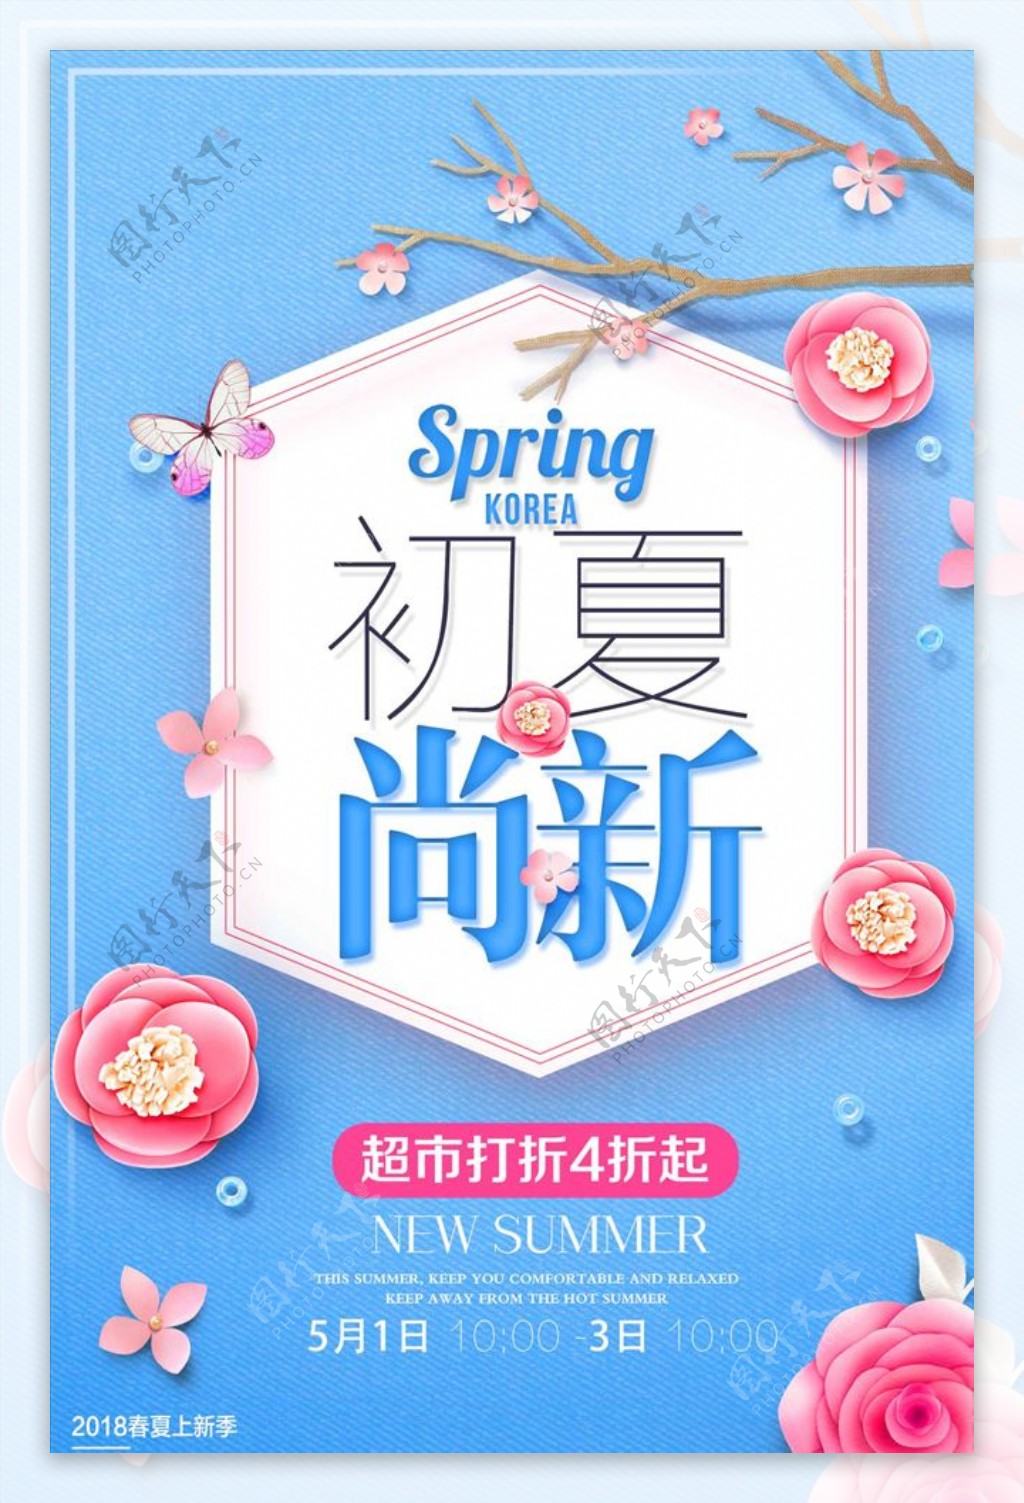 小清新春夏尚新商场促销海报设计